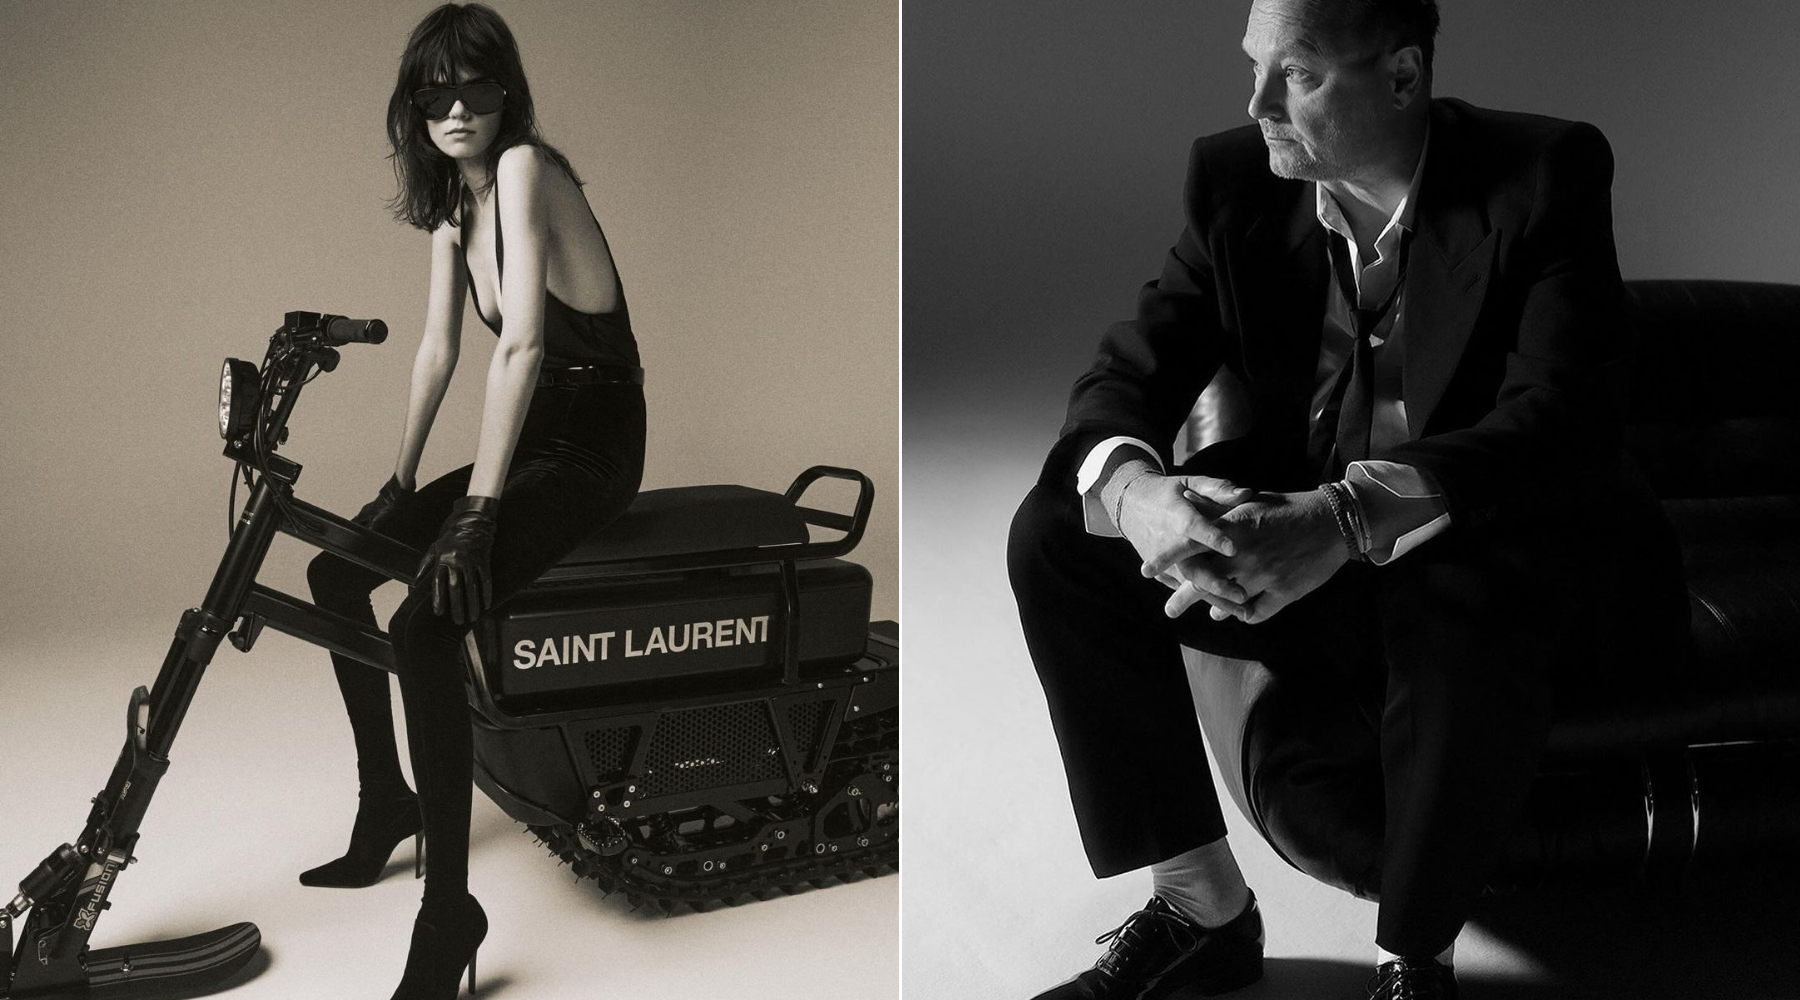 TALKS – novi Saint Laurent podkast koji nas vodi iza kulisa ove modne kuće